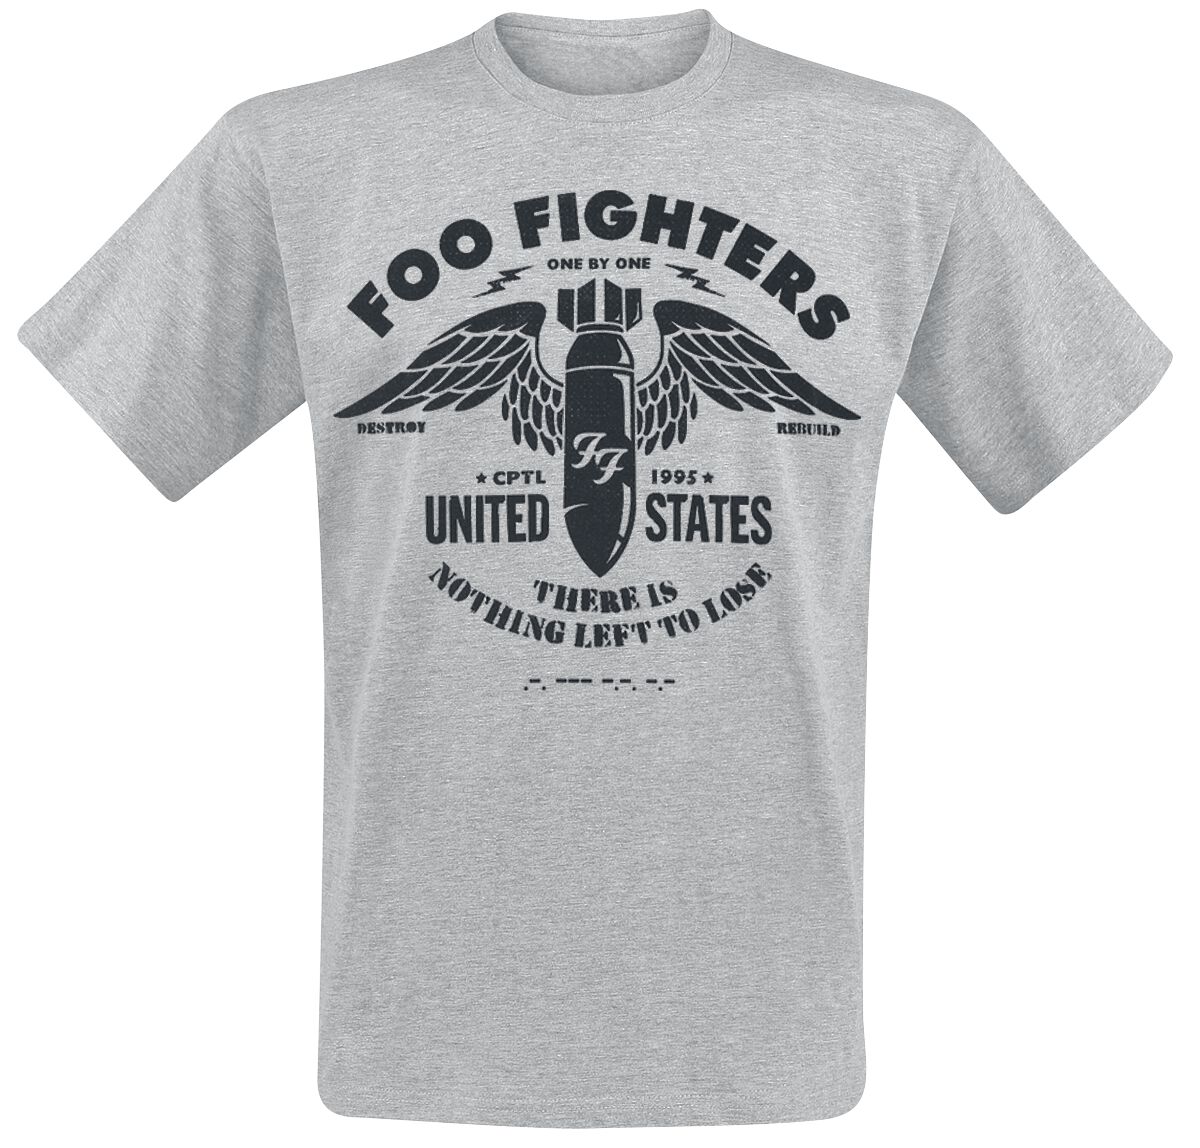 Foo Fighters T-Shirt - Stencil - S bis XXL - für Männer - Größe L - hellgrau meliert  - Lizenziertes Merchandise!